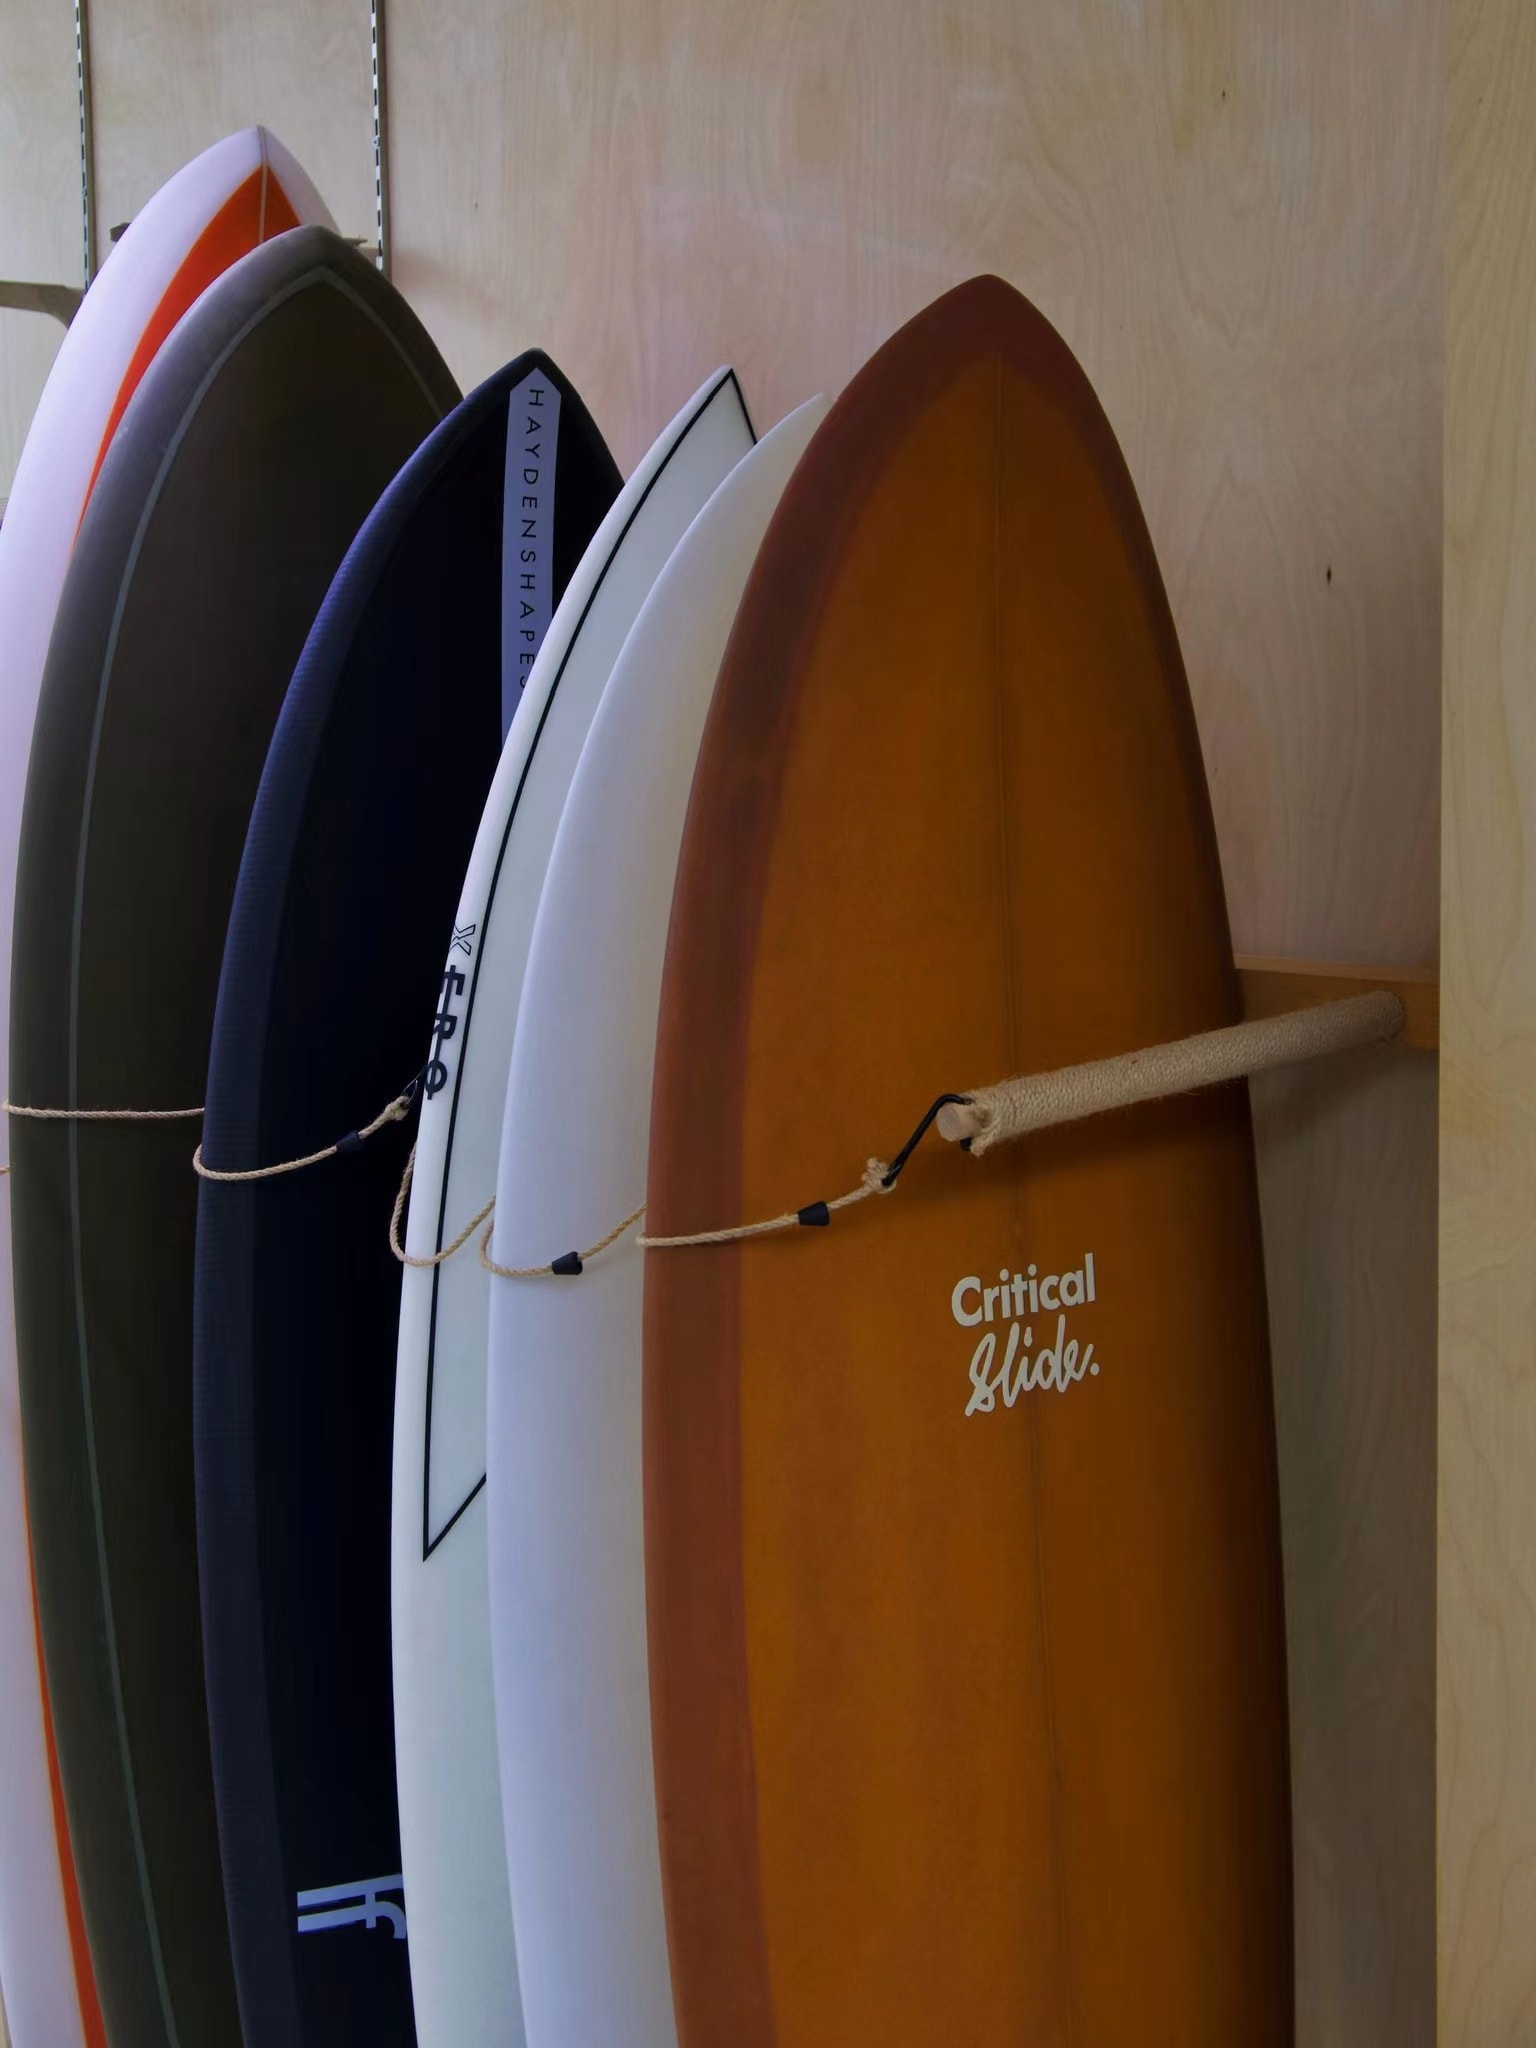 澳洲冲浪品牌 The Critical Slide Society 于厦门开设国内首家线下店